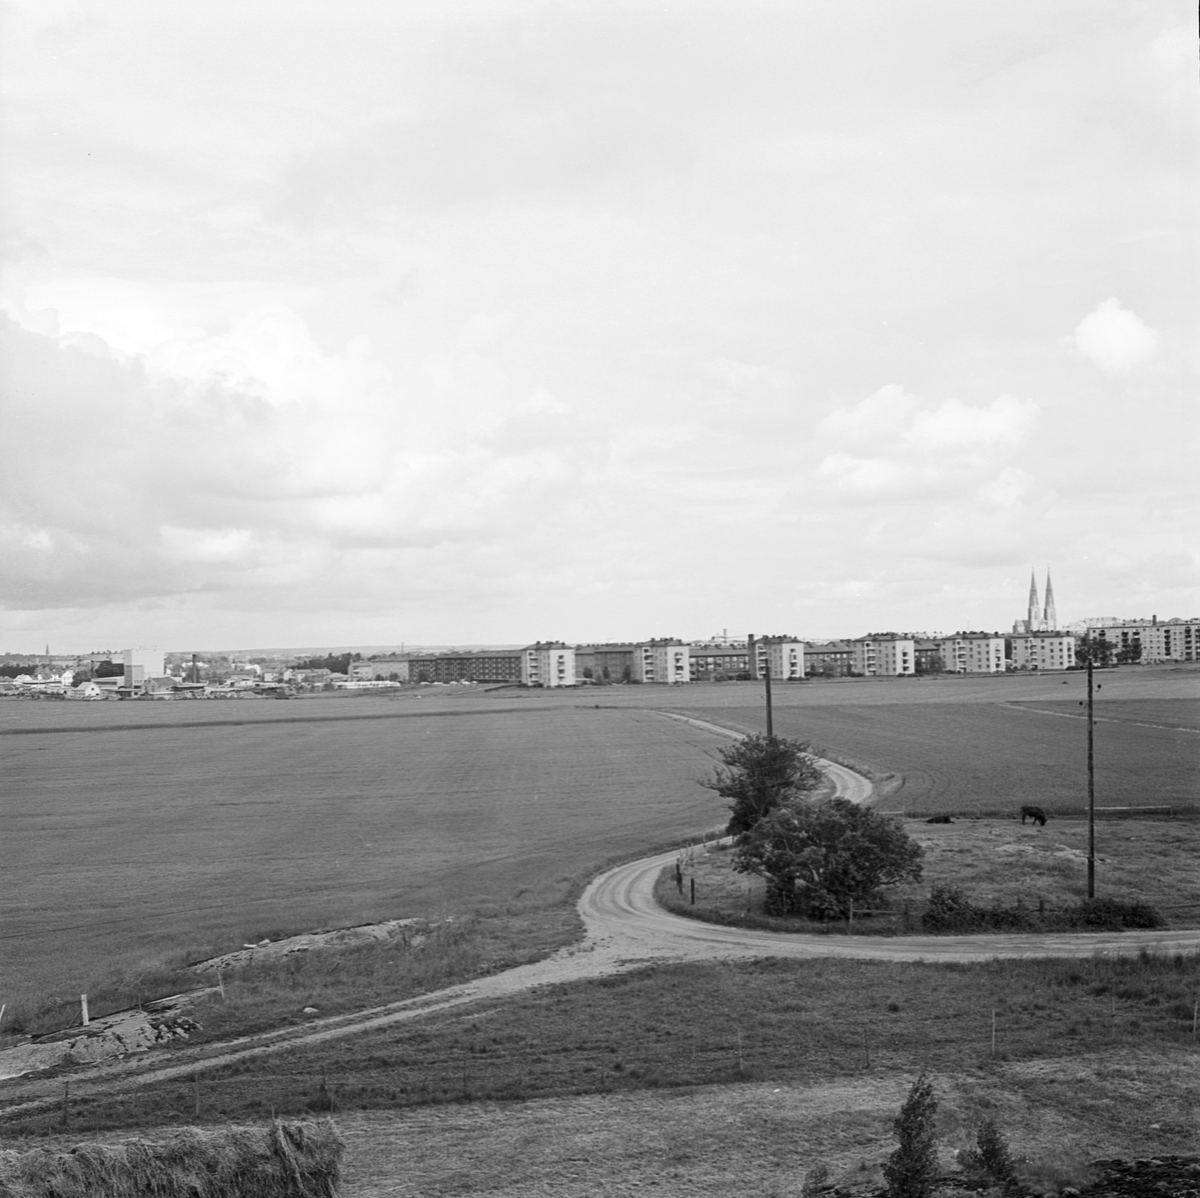 Högspänningslaboratoriet, Husbyborg, Uppsala 1965